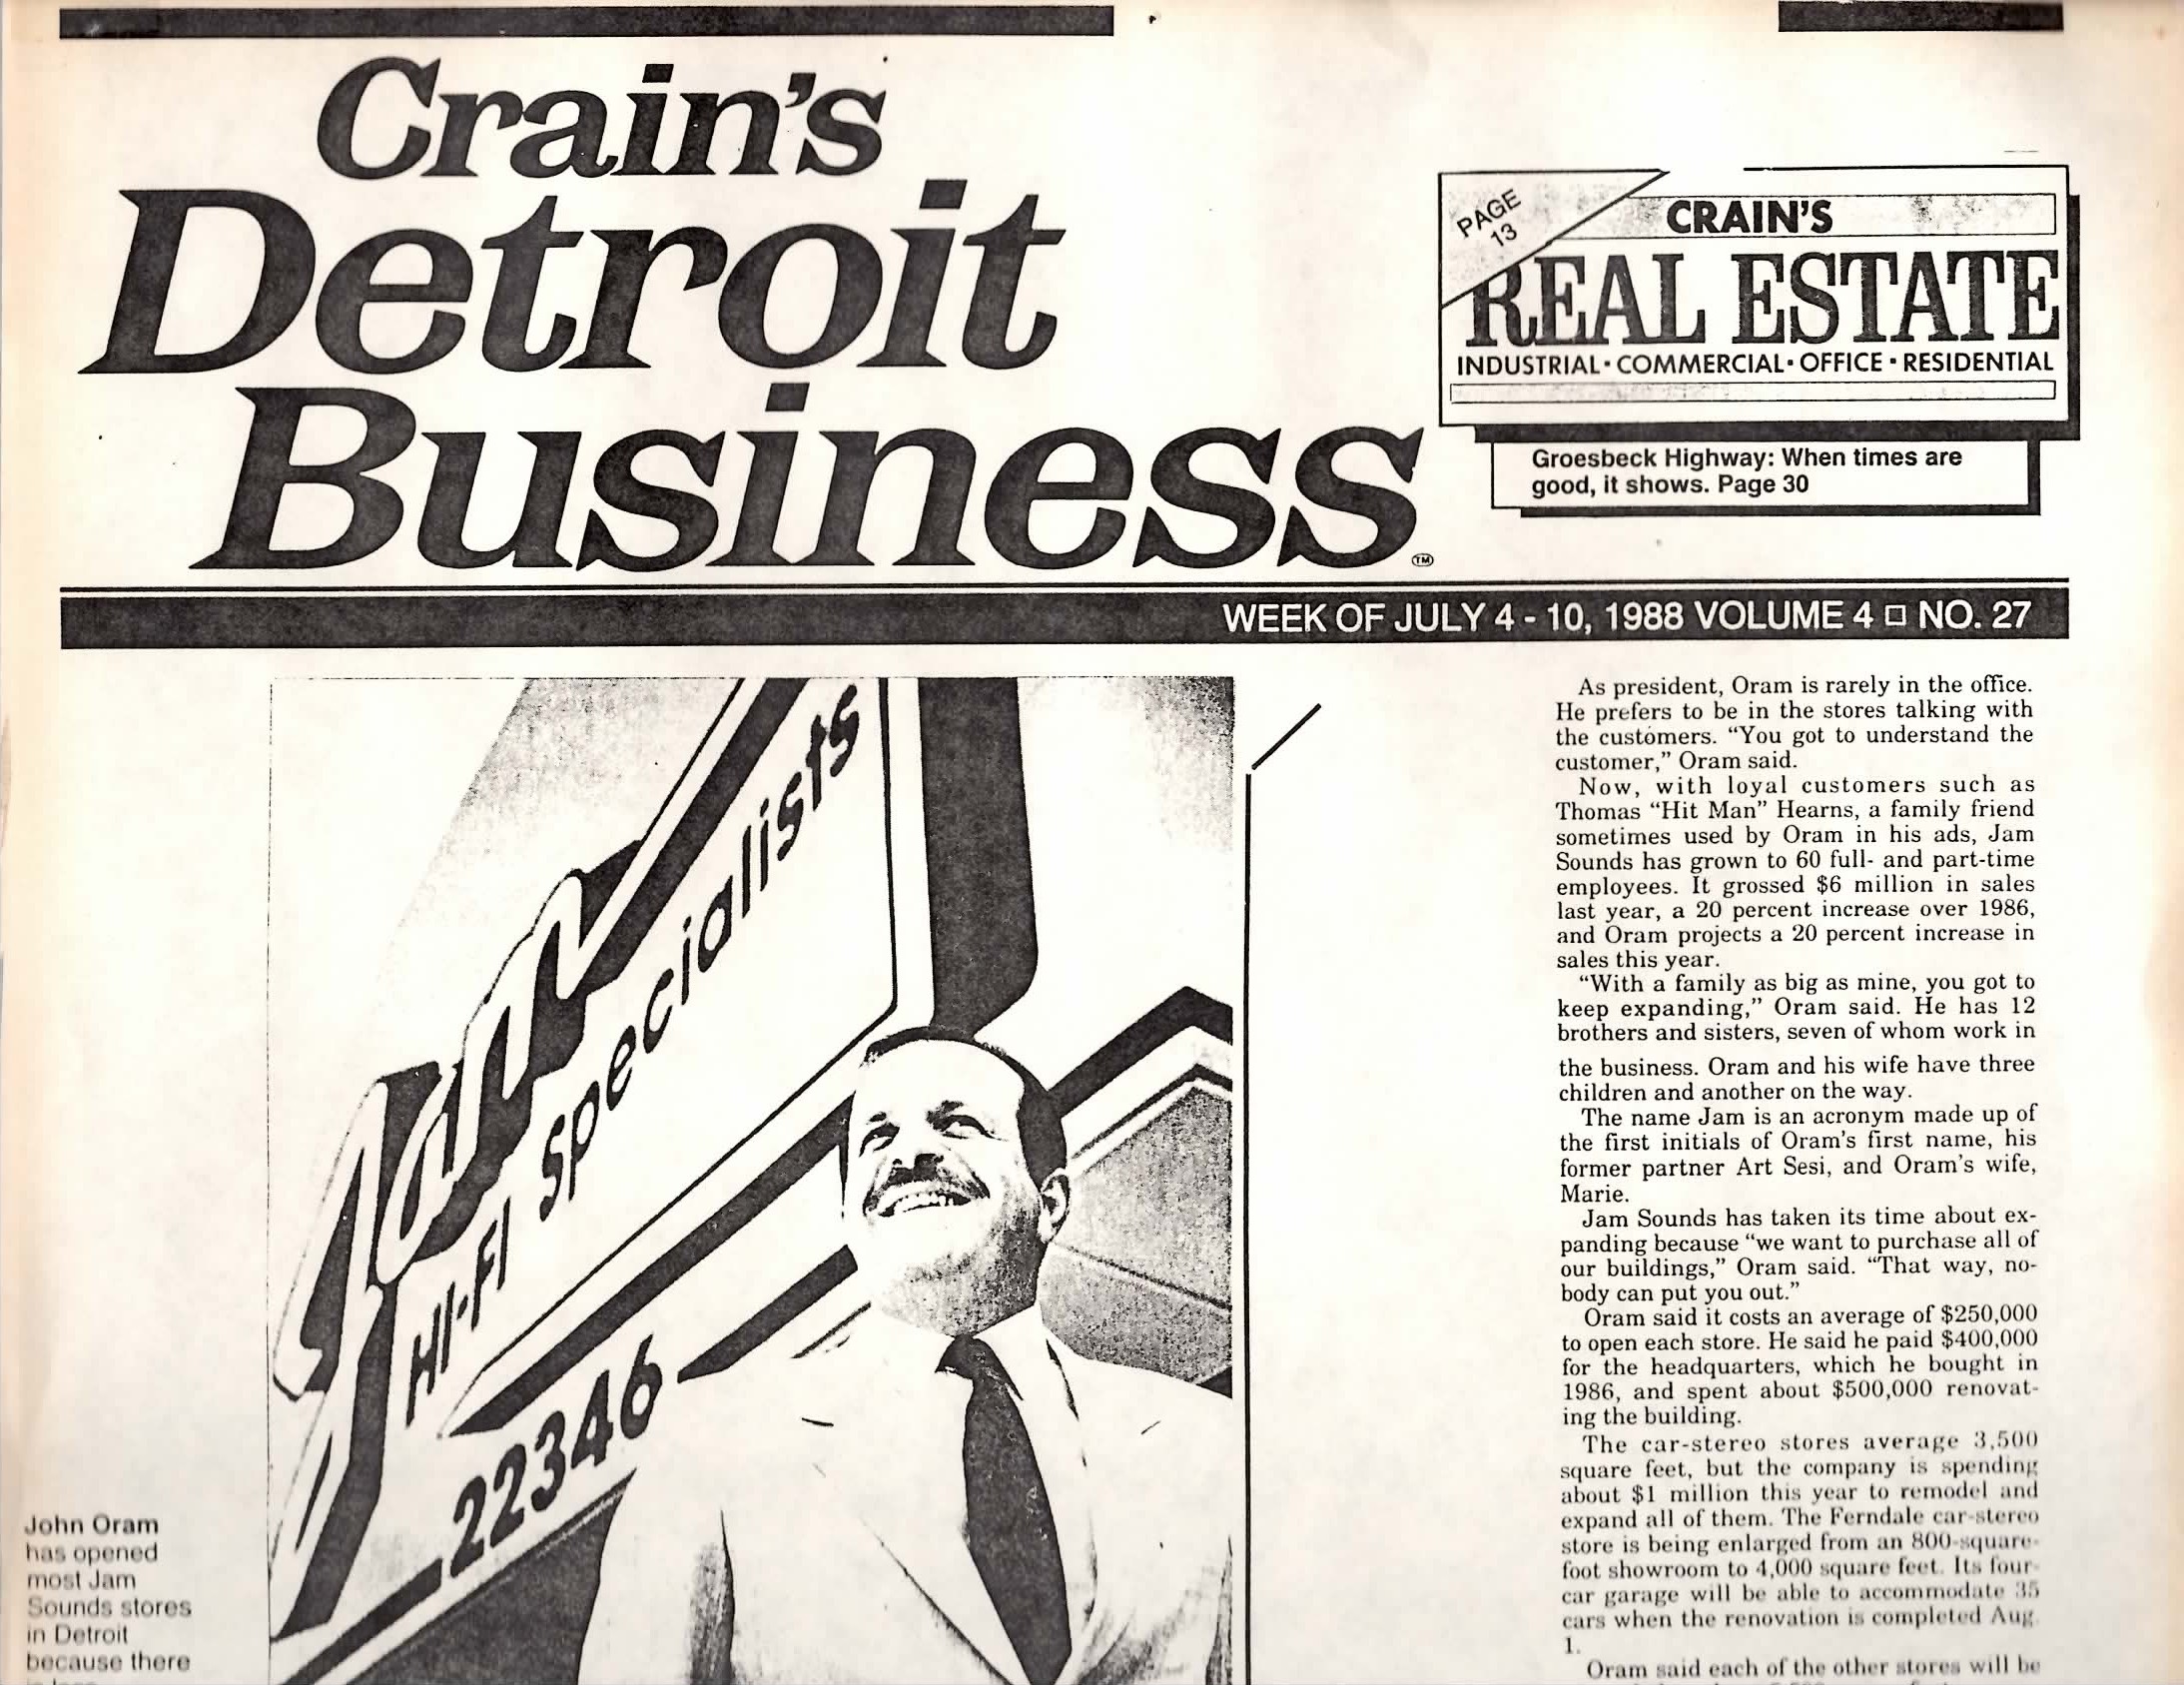 Crain’s Detroit Business